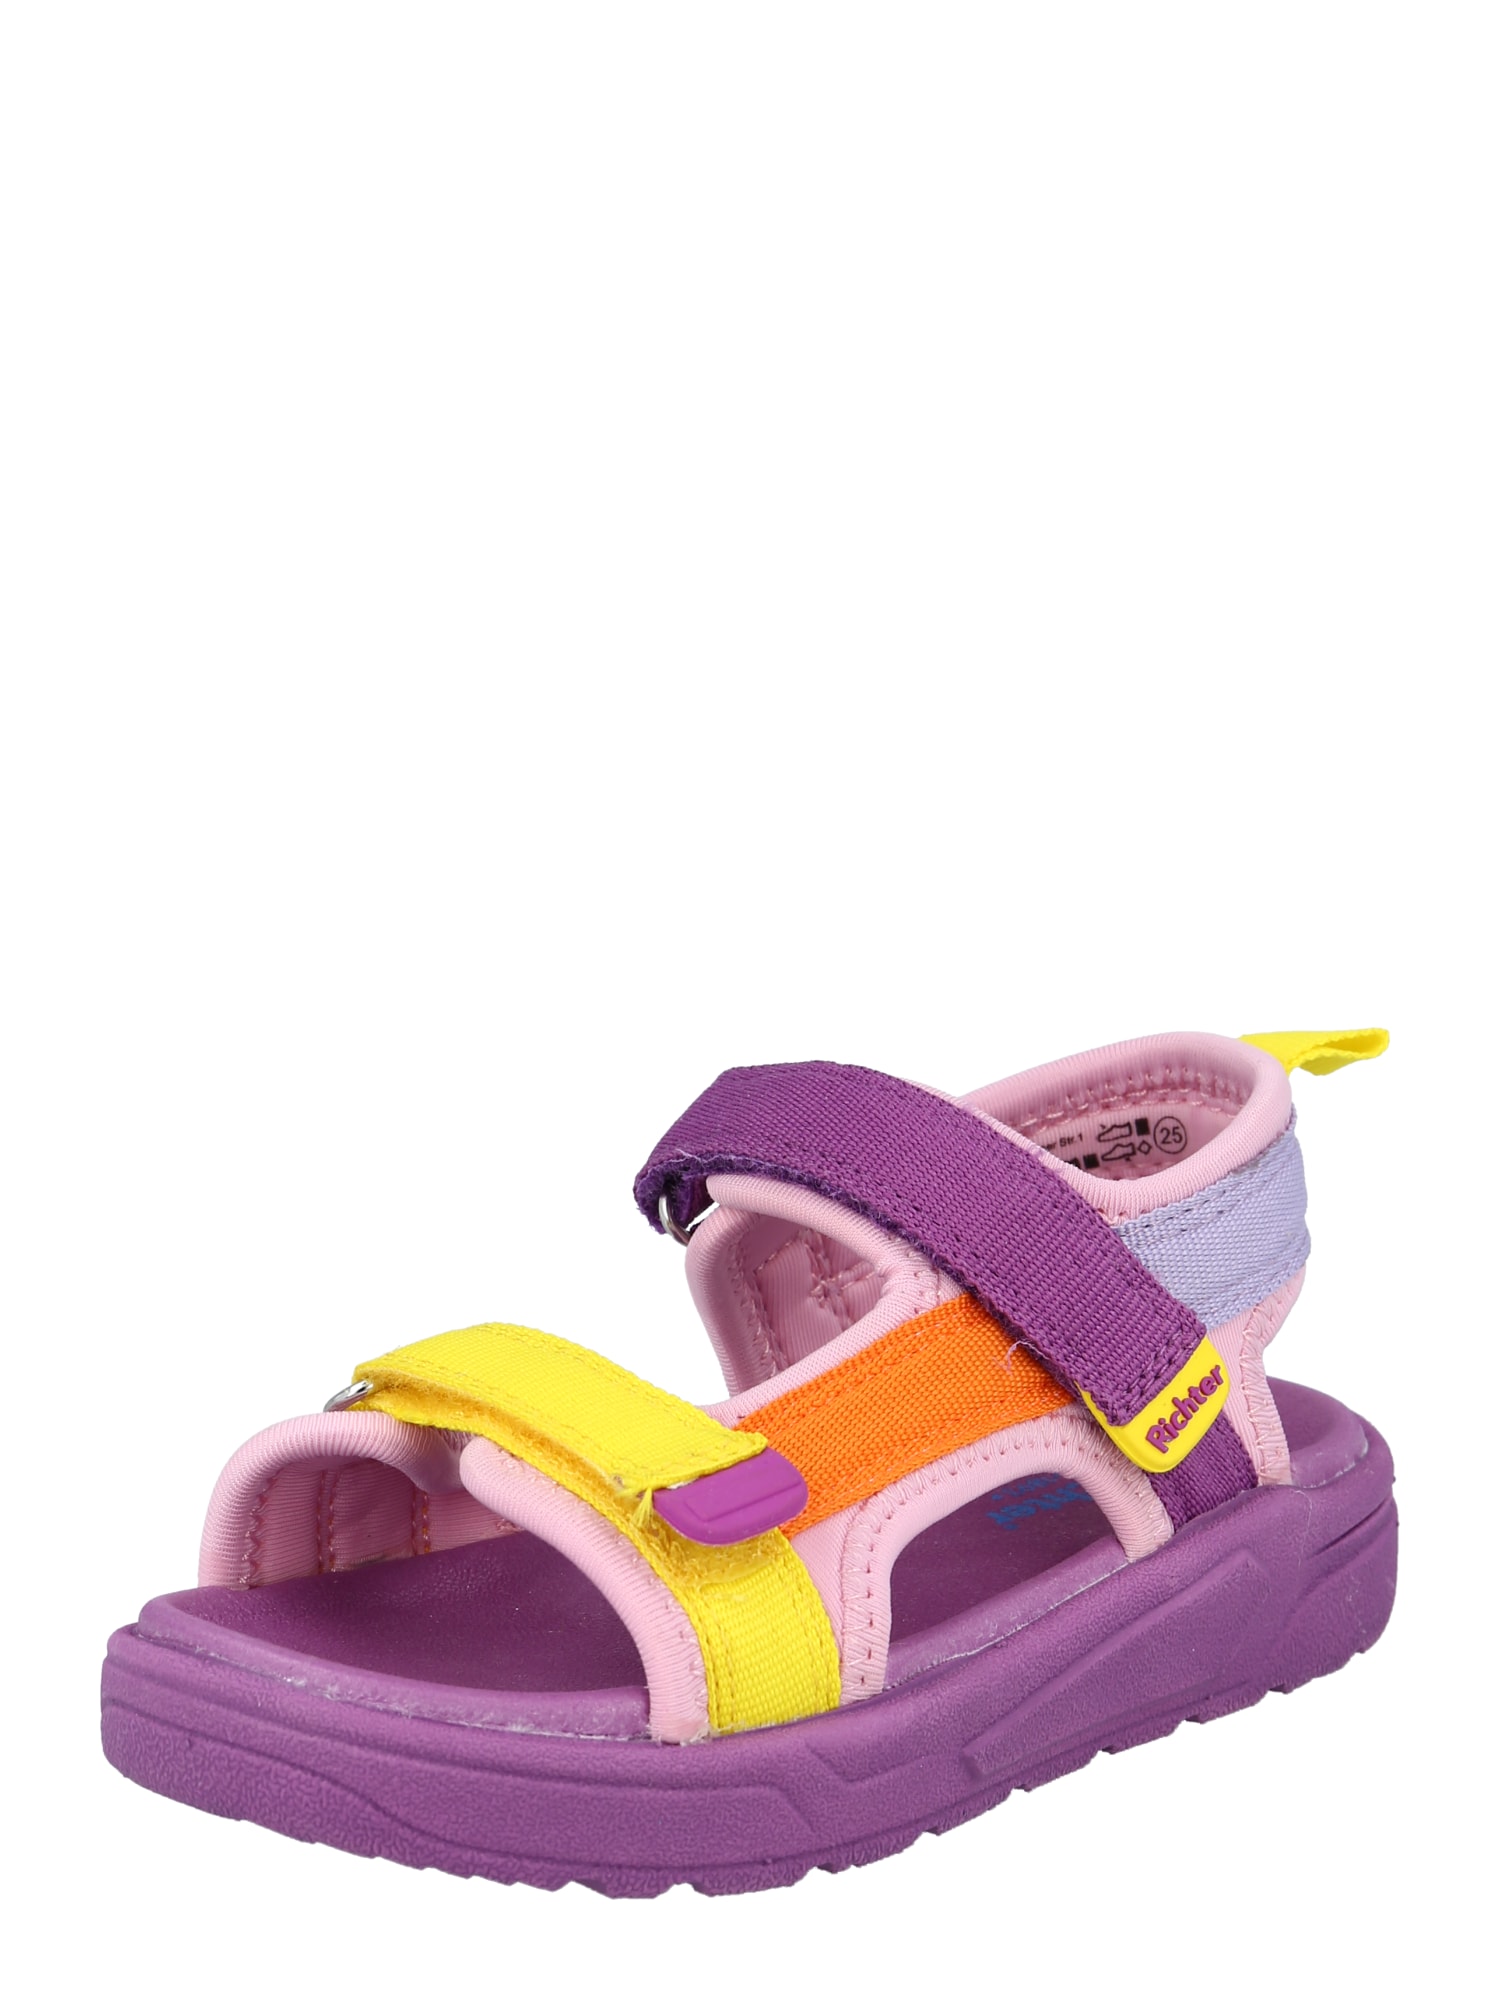 RICHTER Sandalai rožinė / tamsiai violetinė / geltona / oranžinė / pastelinė violetinė